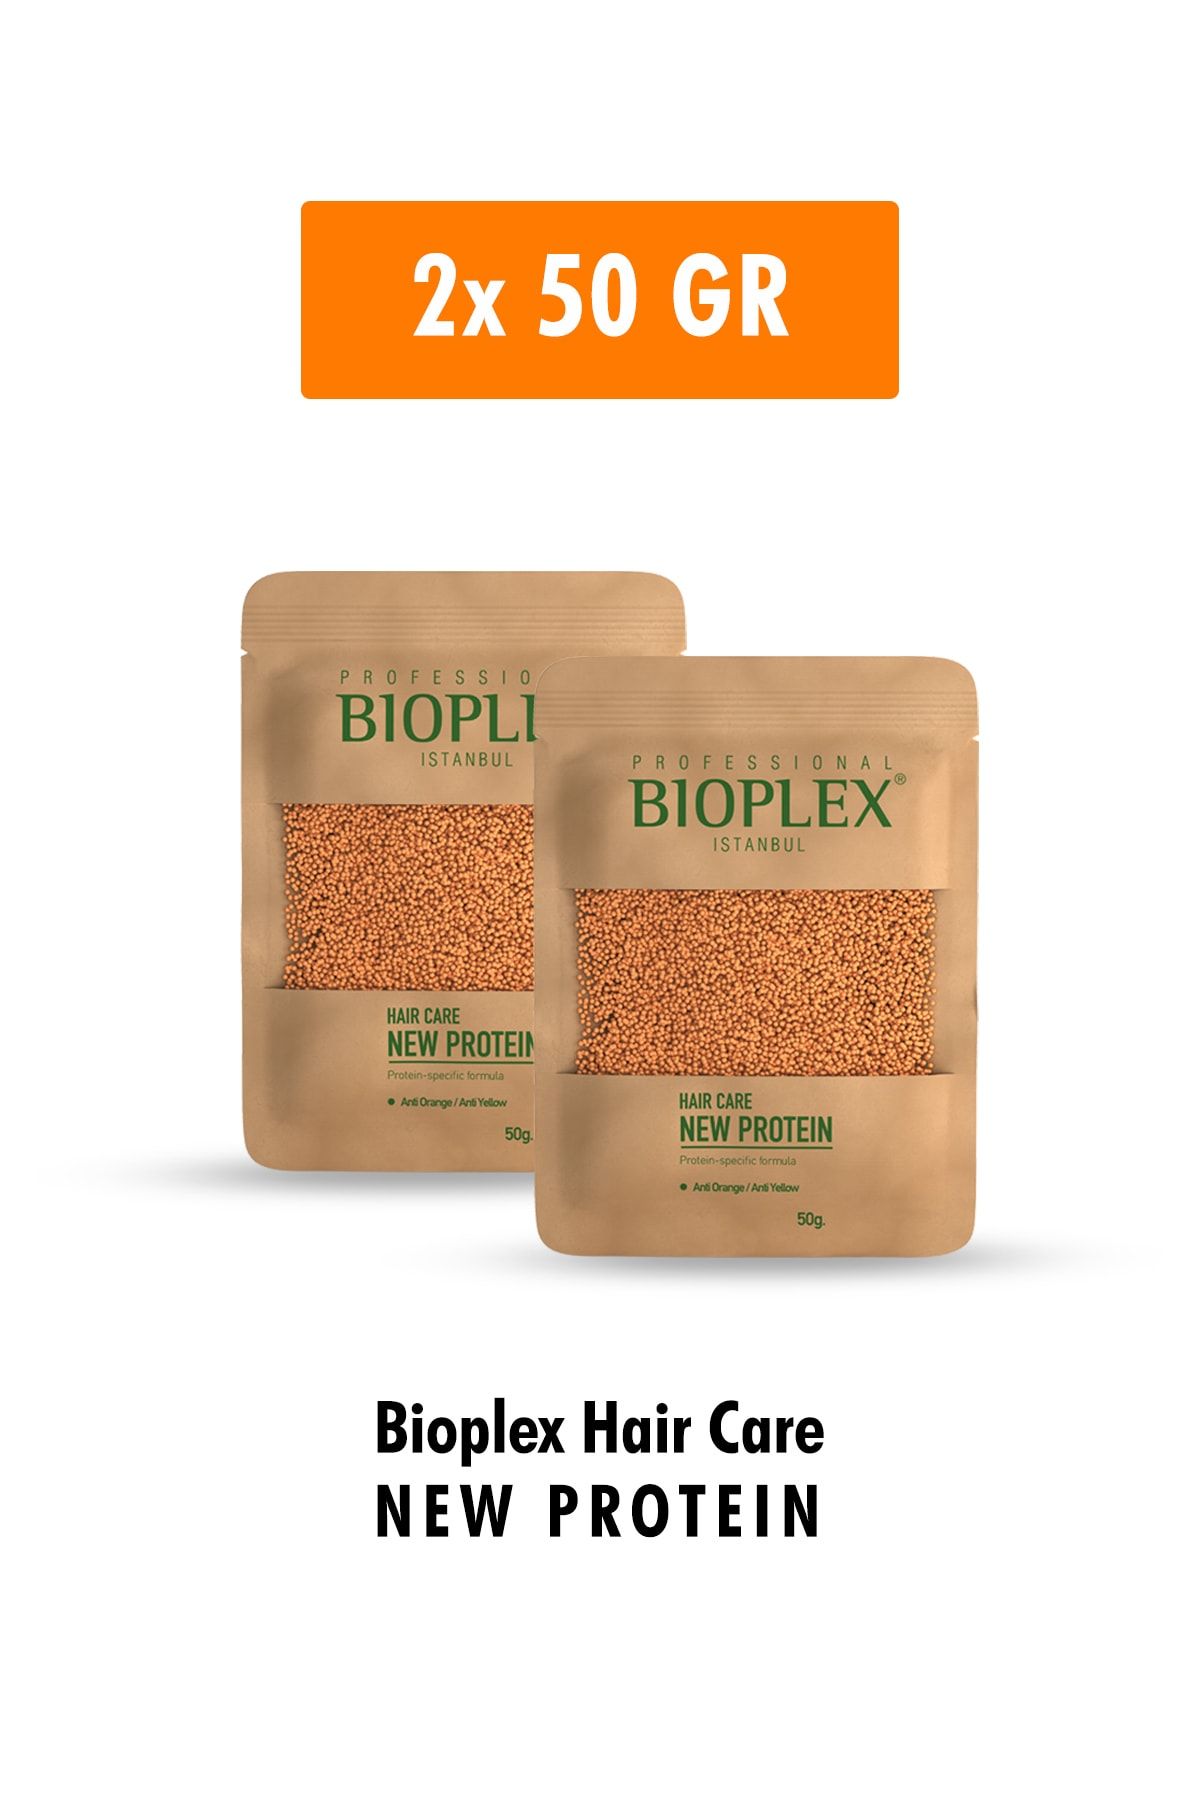 Bioplex Saç Bakım Proteini - Saç Açma Ve Boya Işlemlerinde Yıpranmalara Karşı Özel Ürün 2x50 Gr - 2 Paket